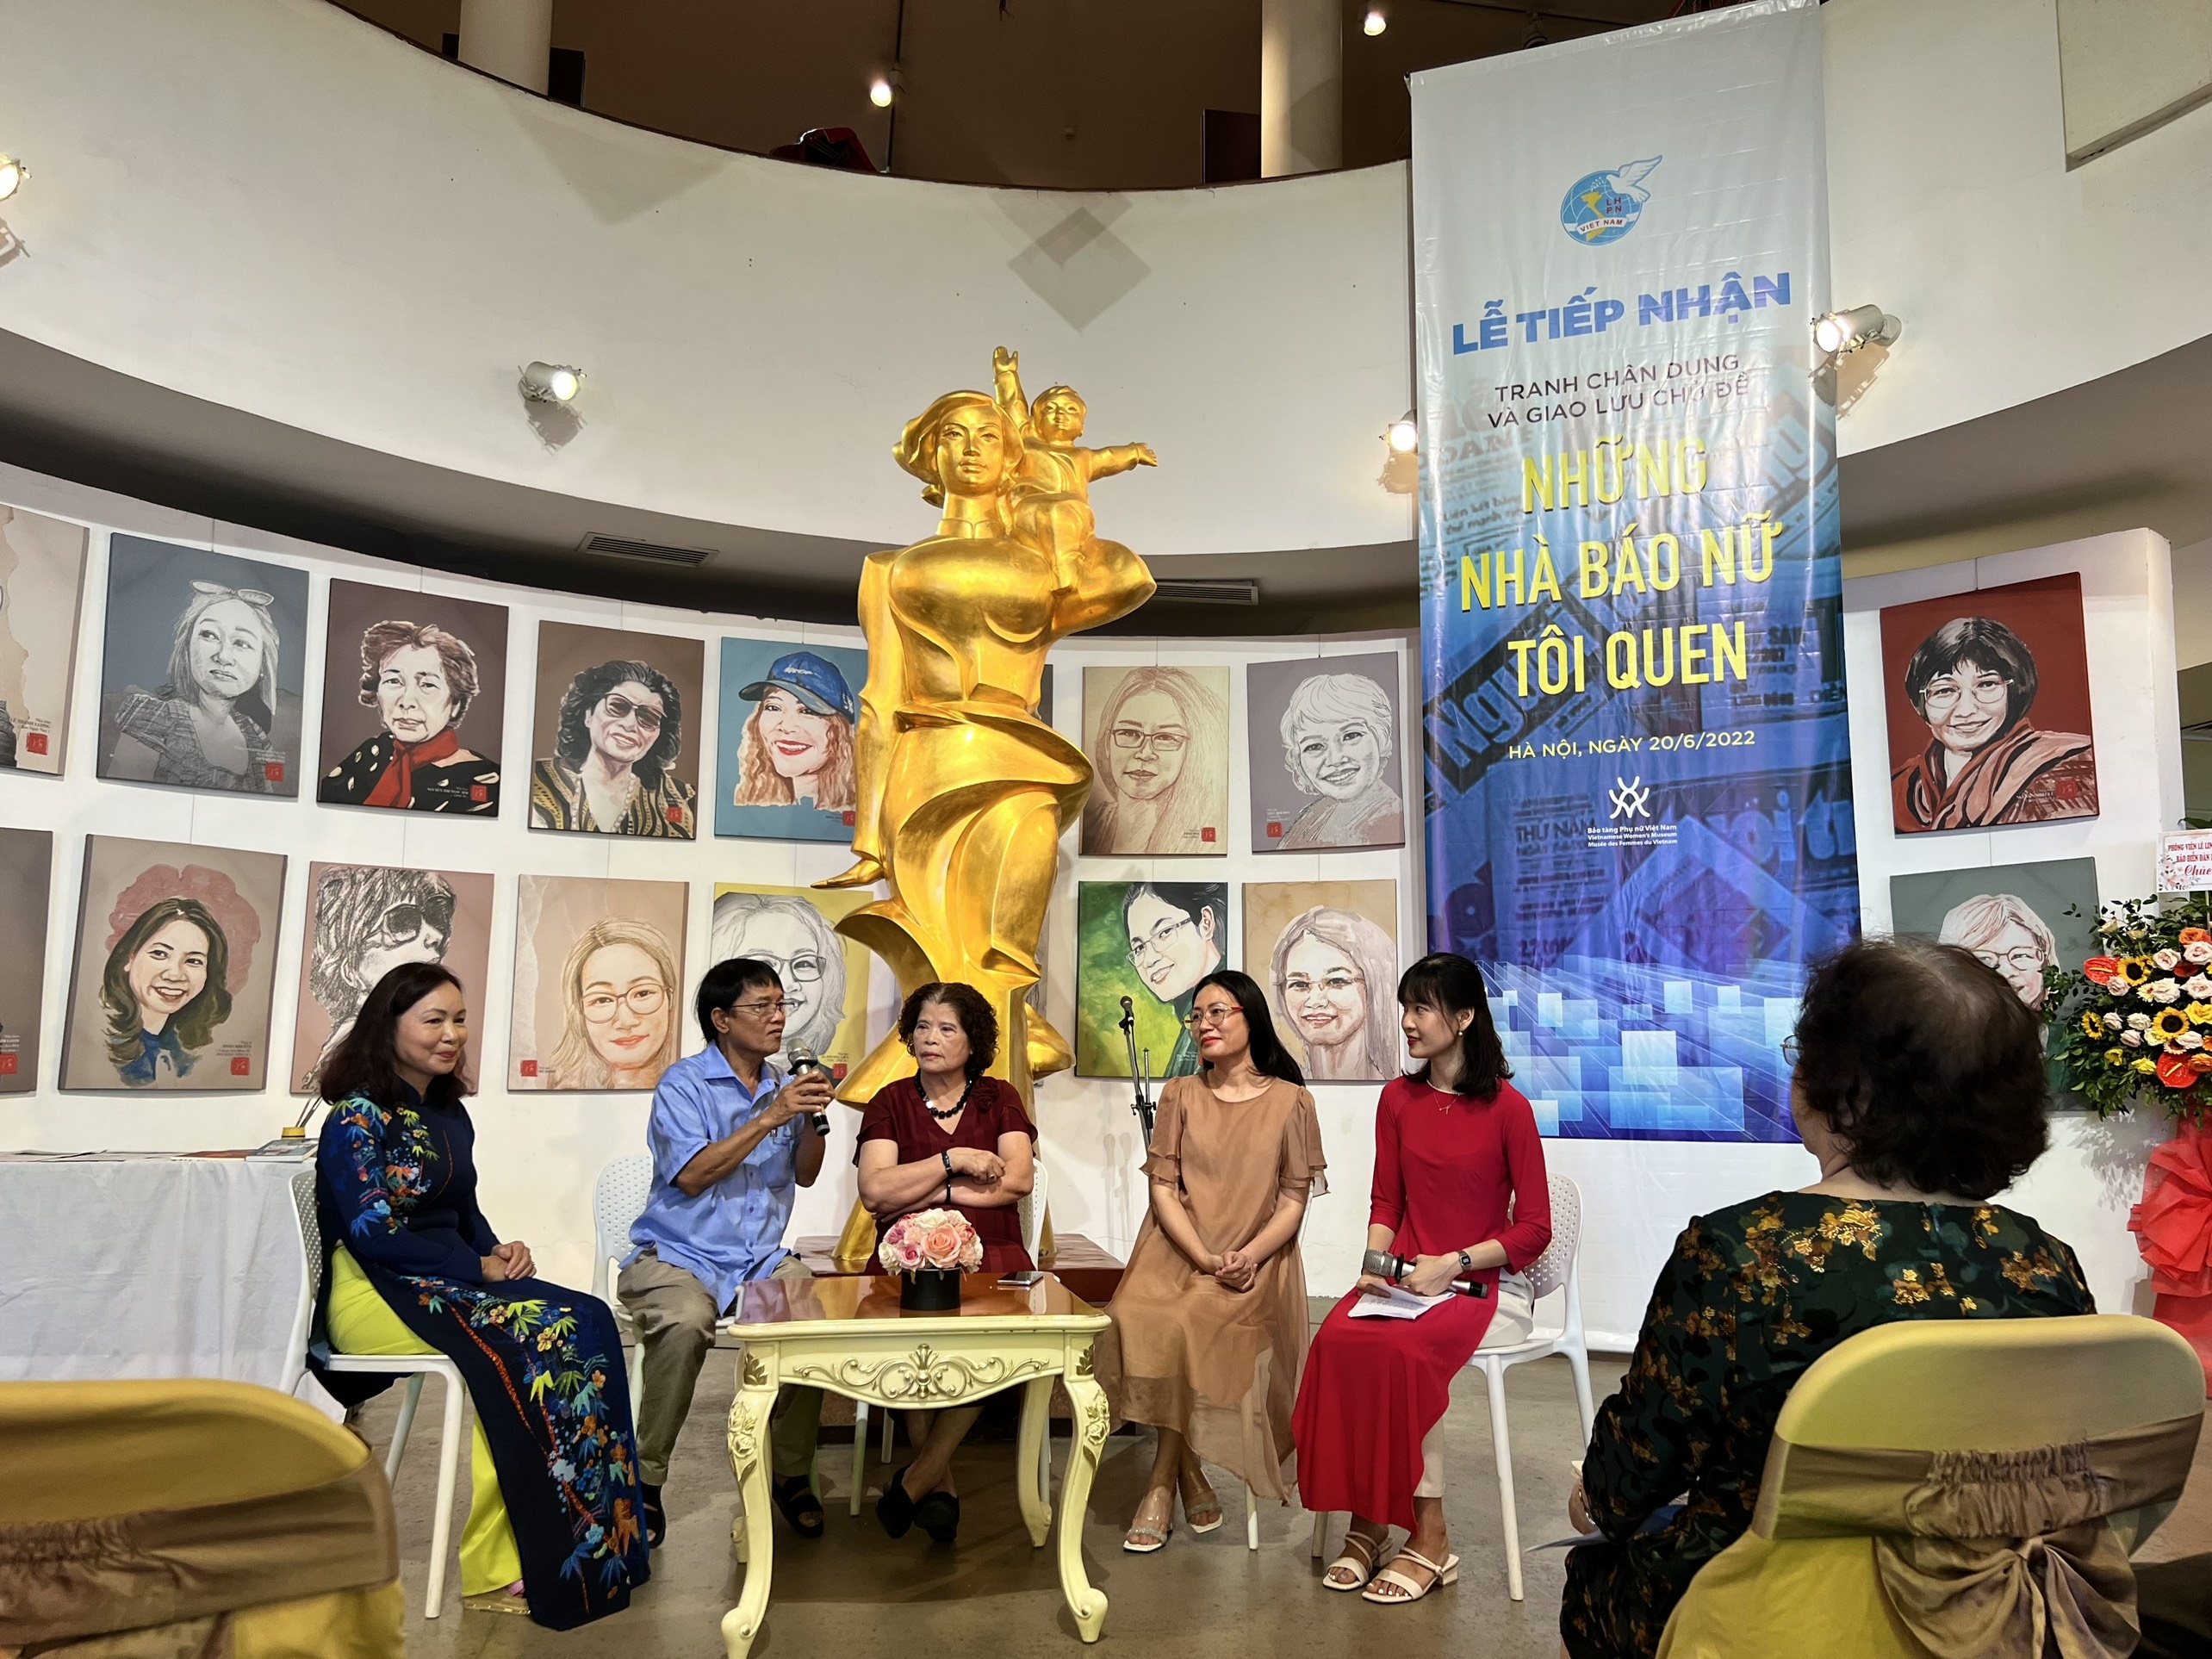 Bảo tàng Phụ nữ Việt Nam tiếp nhận 100 bức tranh chân dung nhà báo nữ - 2